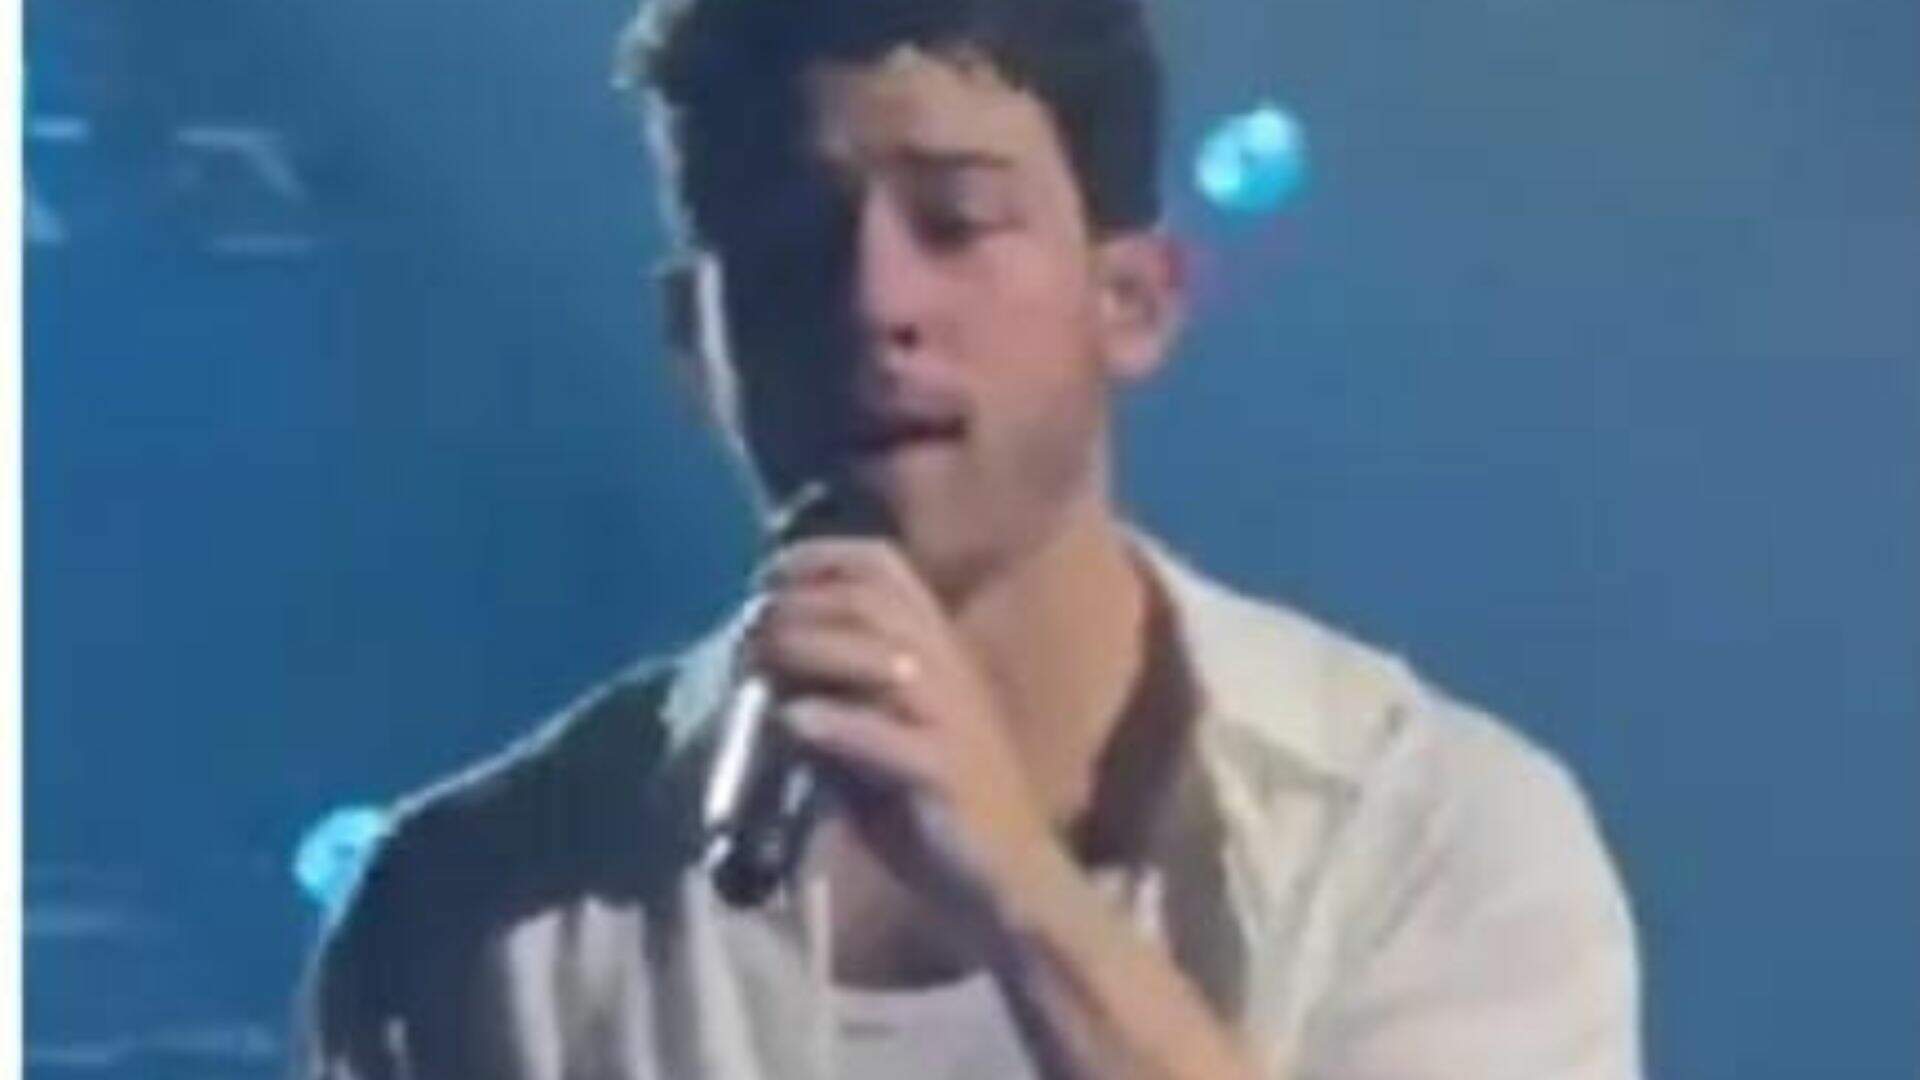 Que susto! Nick Jonas leva tombo feio durante show e assusta fãs; veja cena! - Metropolitana FM